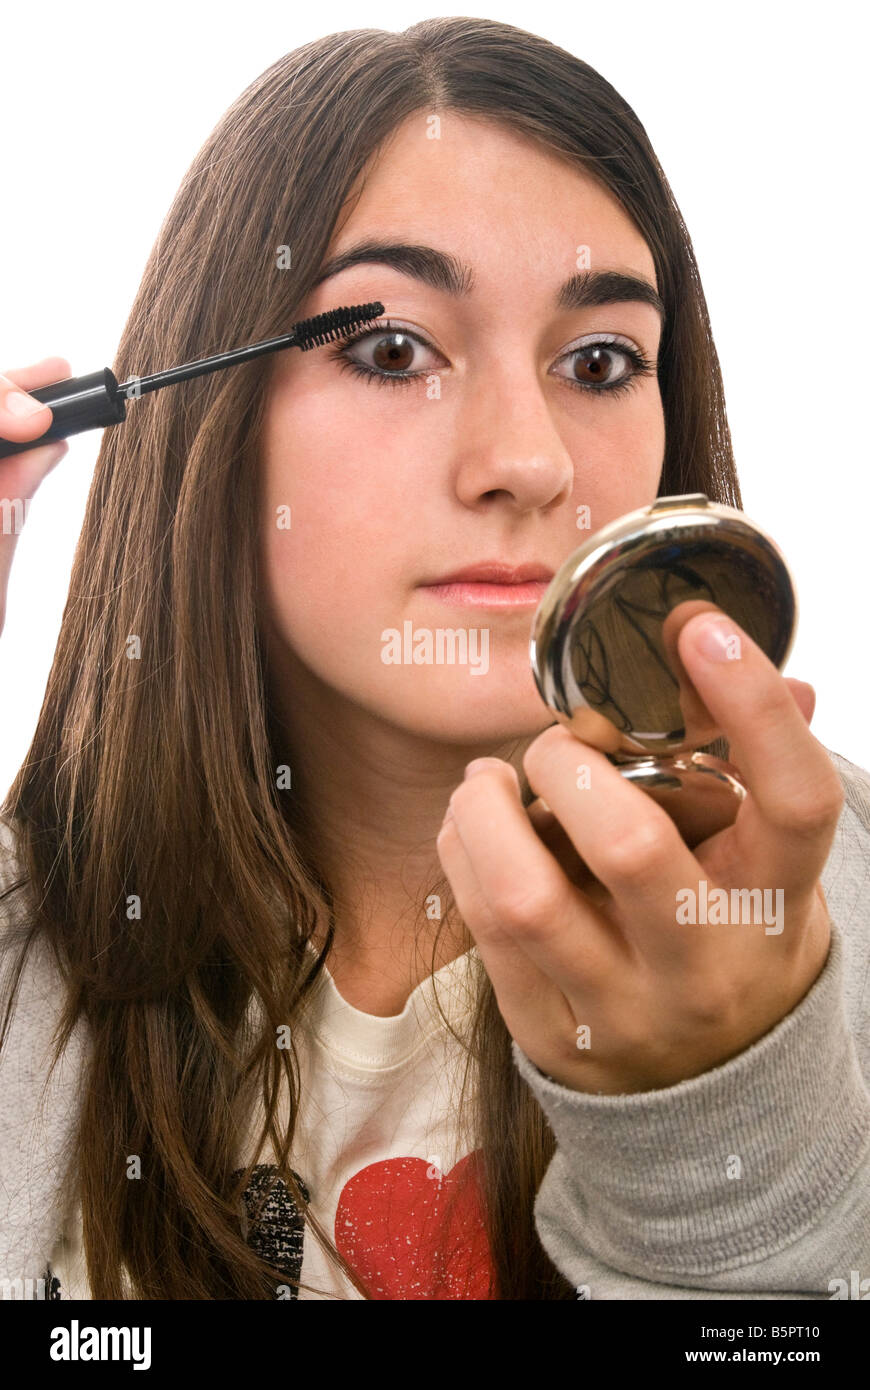 Ritratto verticale di una giovane ragazza adolescente mettendo su make up prima che ella si spegne contro uno sfondo bianco Foto Stock